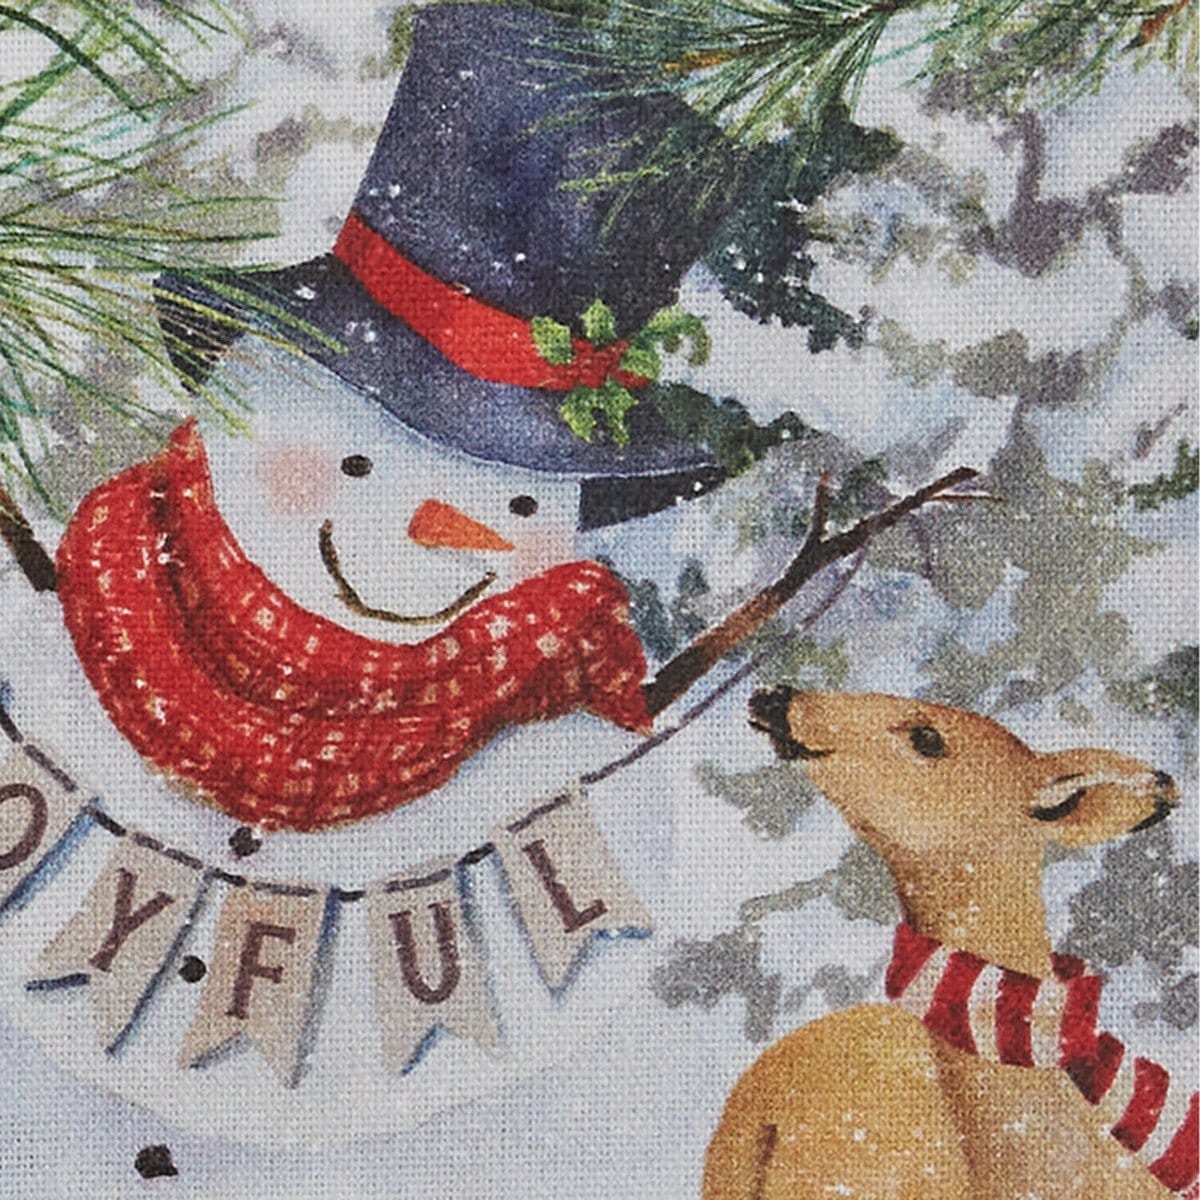 Joyful Snowman With Animal Friends Decorative Towel-Park Designs-The Village Merchant